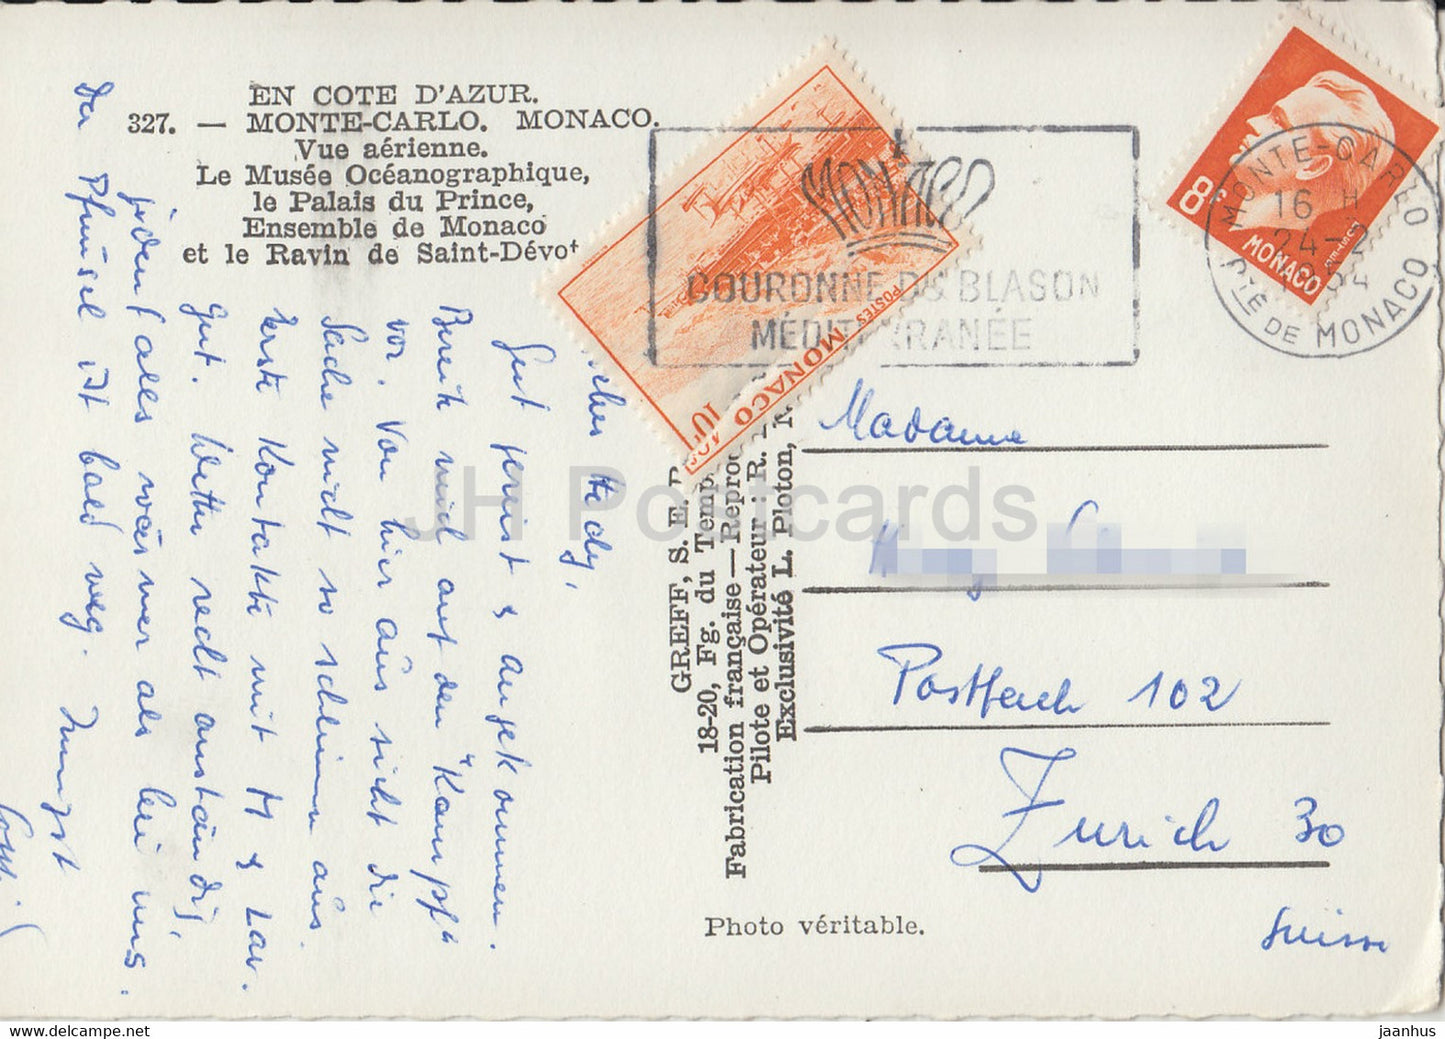 Monte Carlo - Vue Aerienne - Le Musee Oveanographique - Le Palais du Prince - 327 - alte Postkarte - 1954 - Monaco - gebraucht